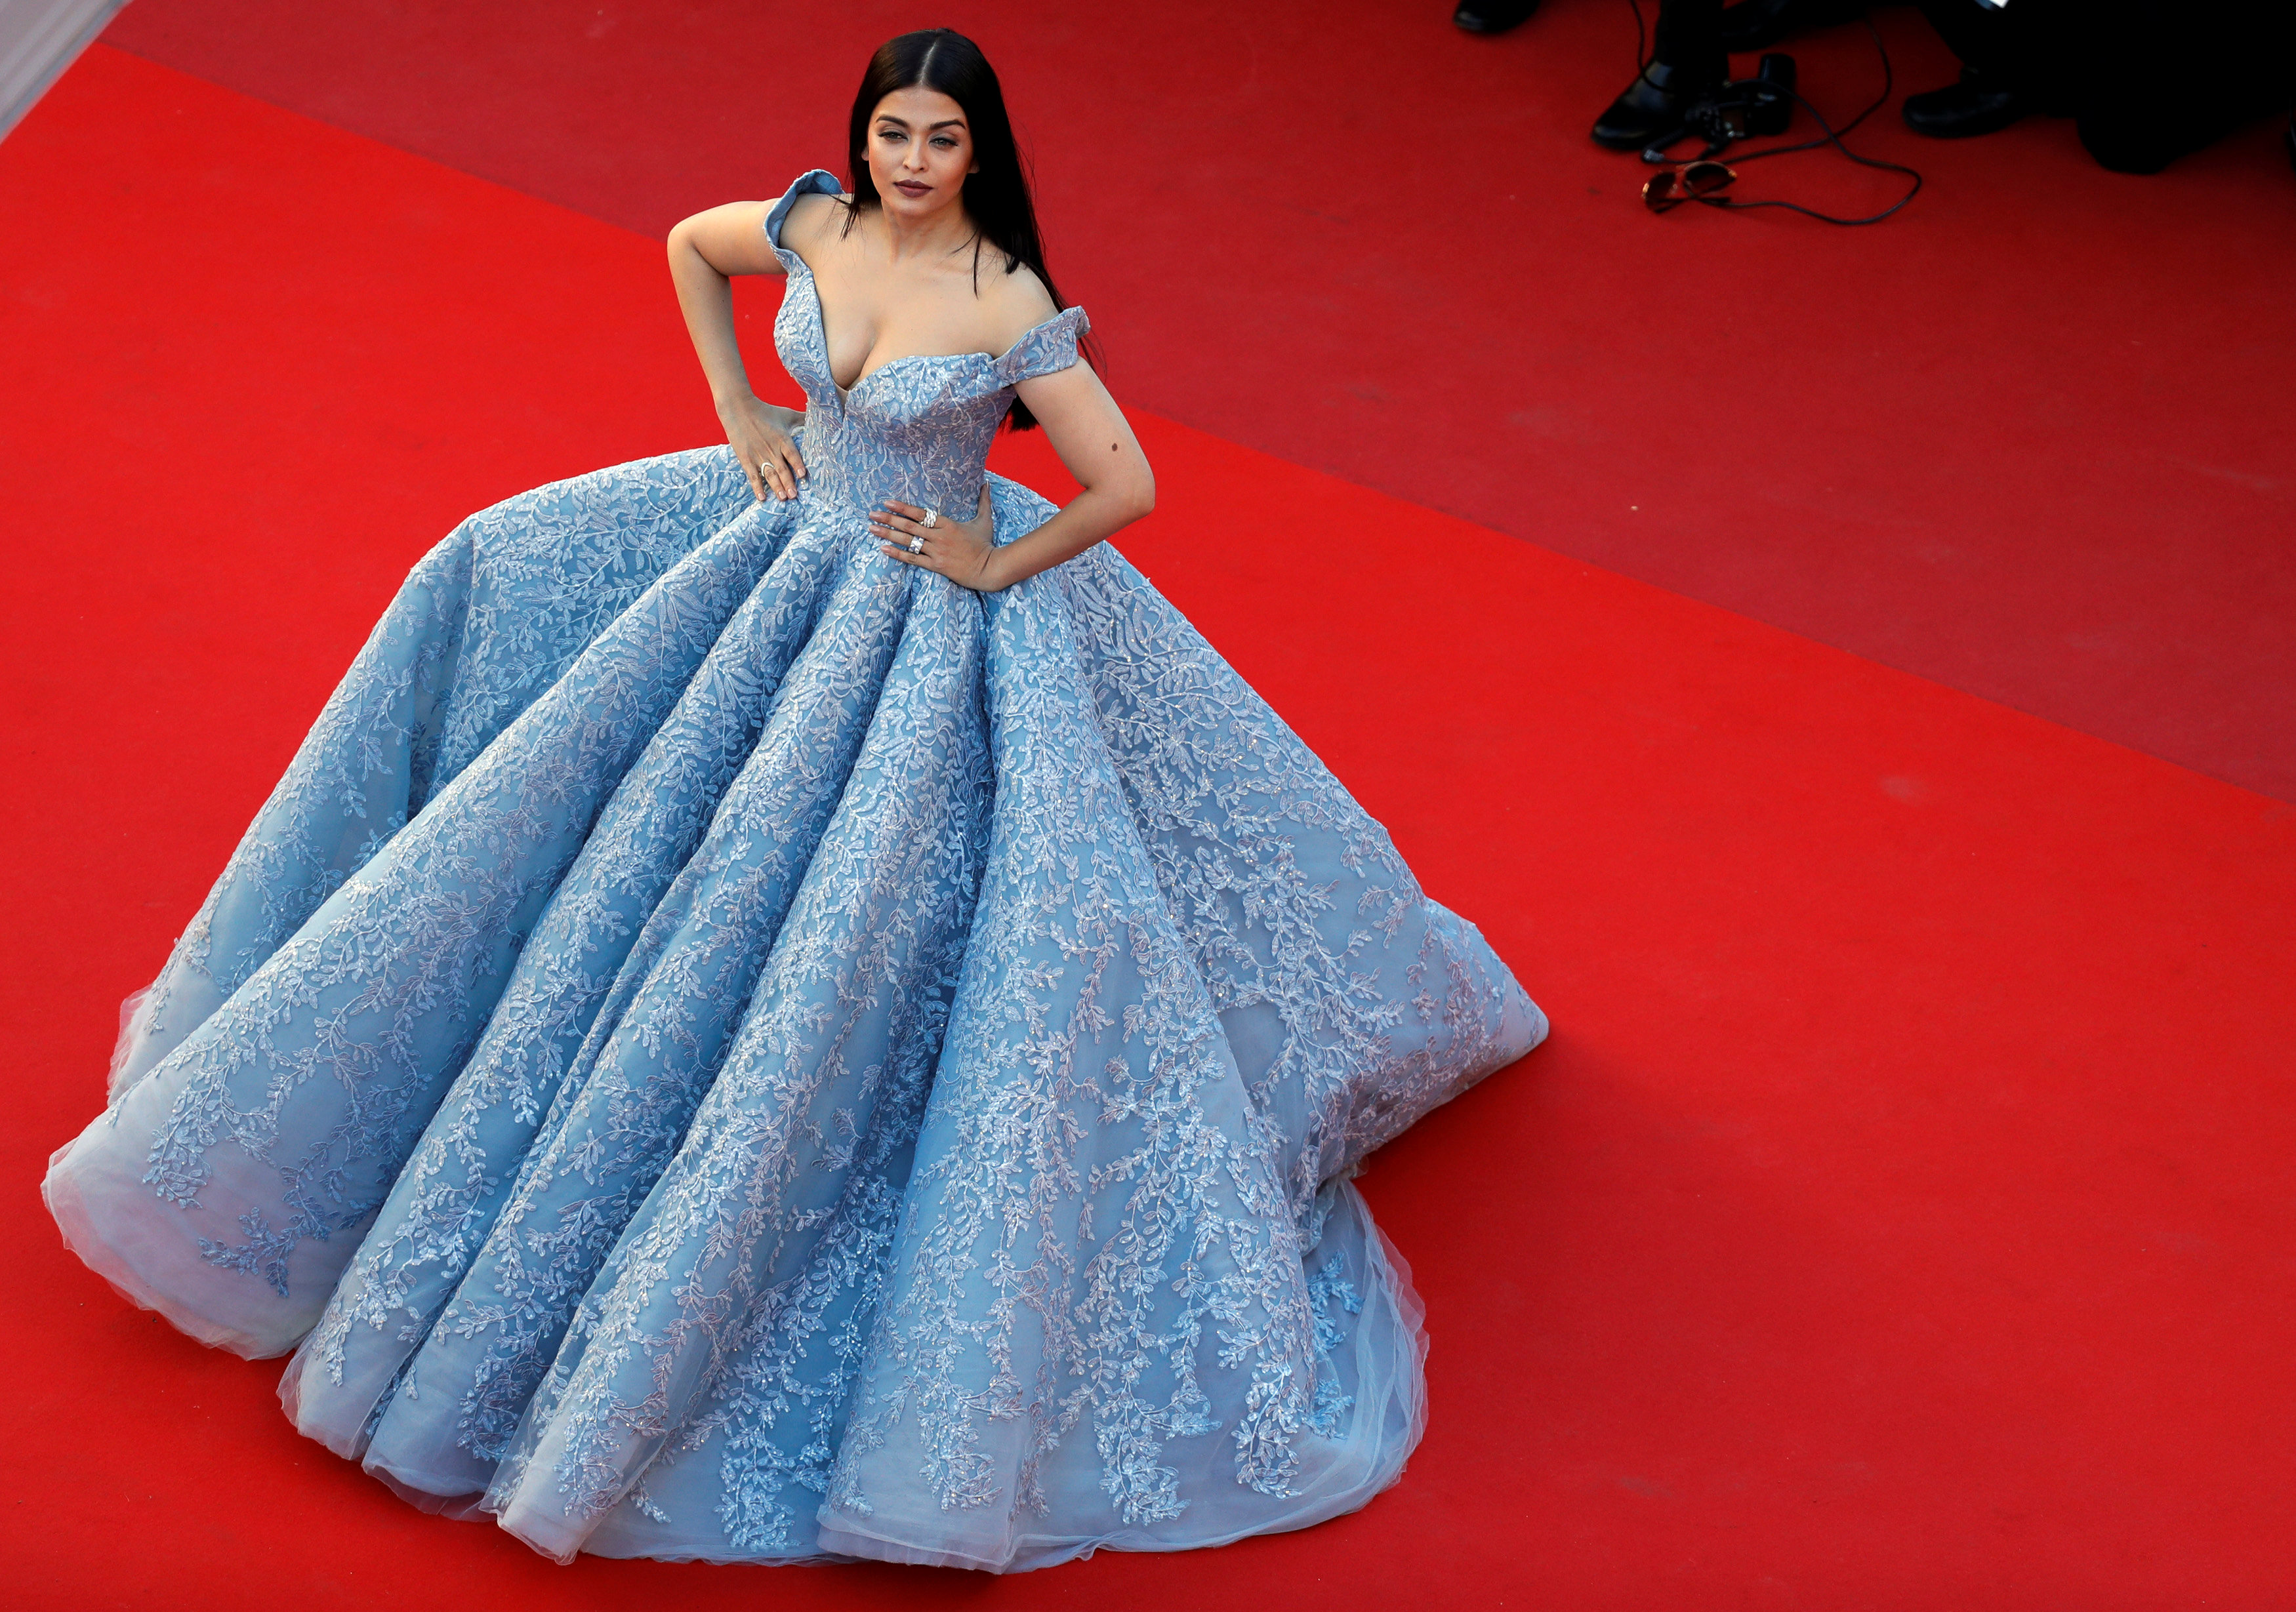 Mỹ nhân Aishwarya Rai lộng lẫy trên thảm đỏ Cannes - Báo Người lao động